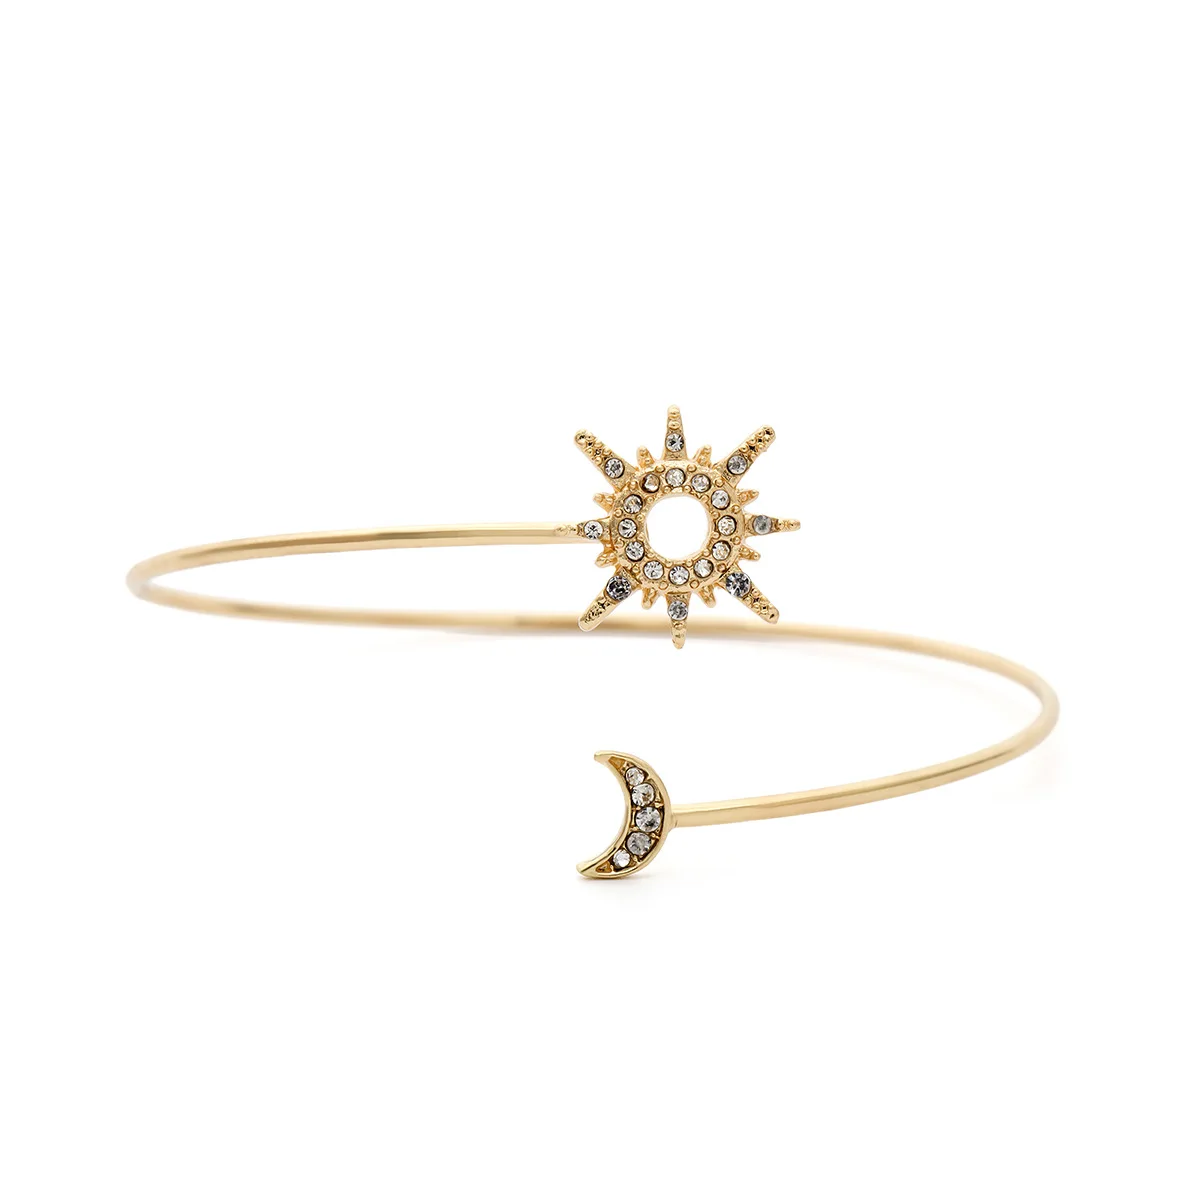 GEREIT, винтажная мода, бохо, простой металлический женский браслет на руку, браслет, звезда, Луна, открытая манжета, браслет на руку, ювелирные изделия, подарки